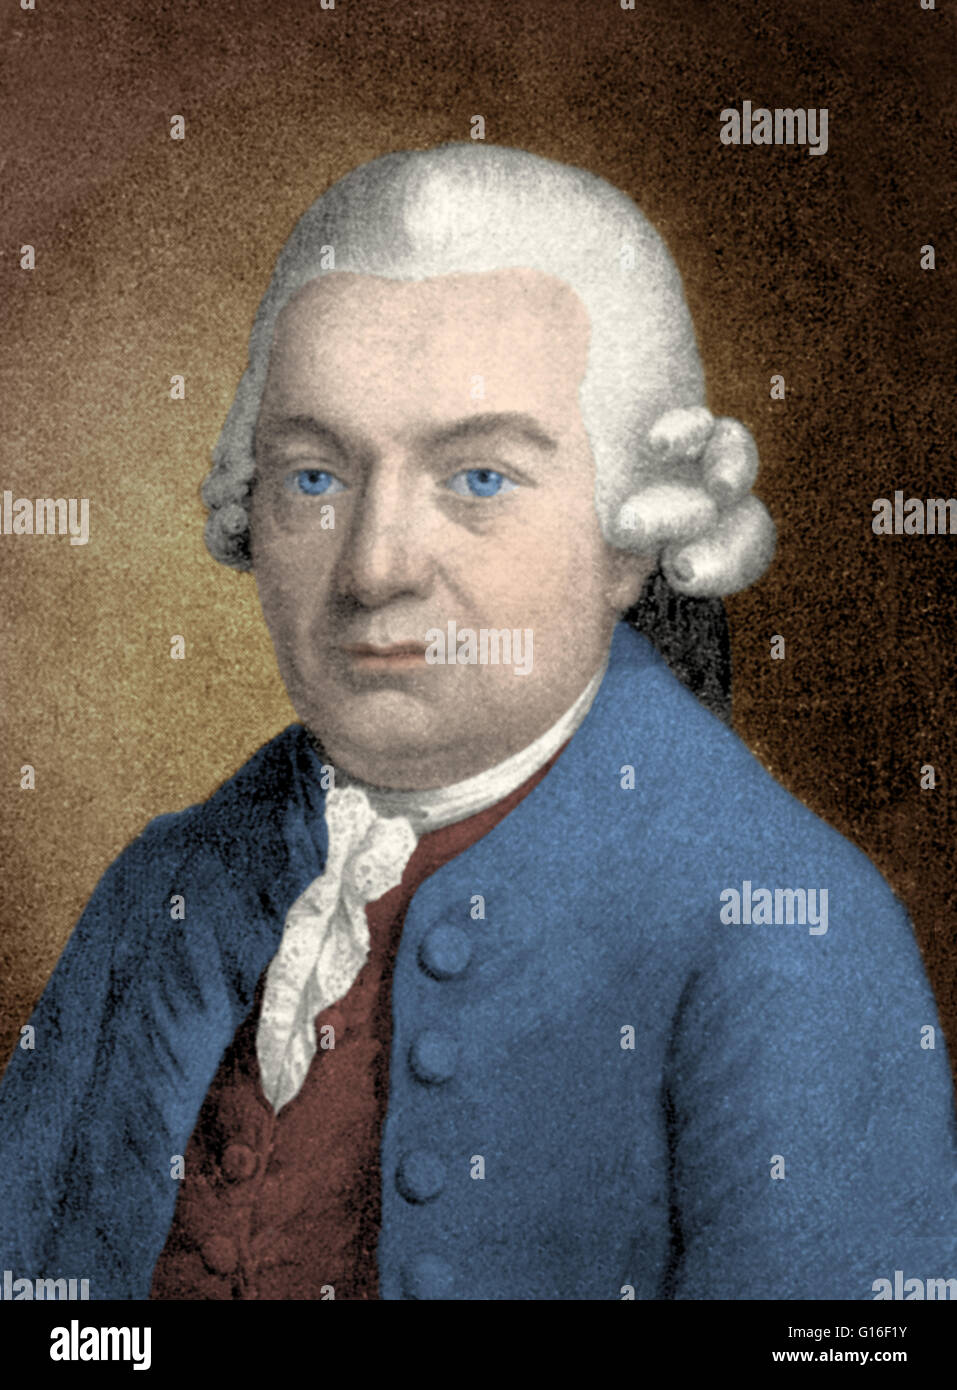 <b>Carl Philipp</b> Emanuel Bach (March 8, 1714 - December 14, 1788) was a German ... - carl-philipp-emanuel-bach-march-8-1714-december-14-1788-was-a-german-G16F1Y